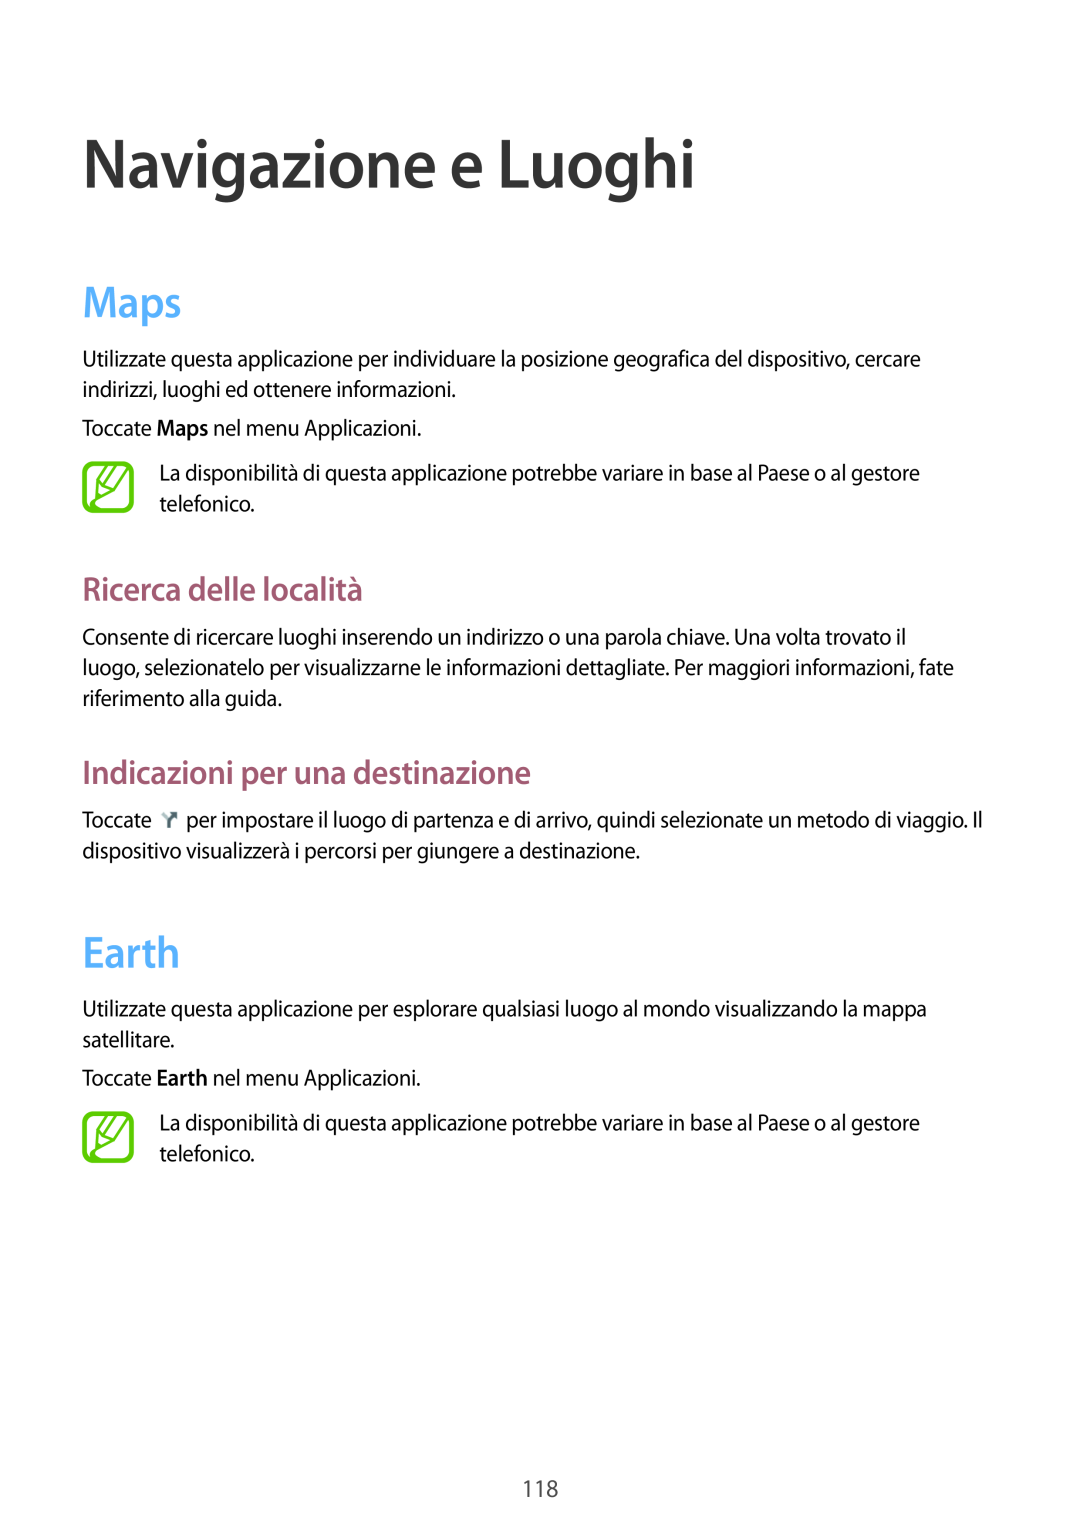 Samsung GT-N7100RWDITV manual Navigazione e Luoghi, Maps, Earth, Ricerca delle località, Indicazioni per una destinazione 